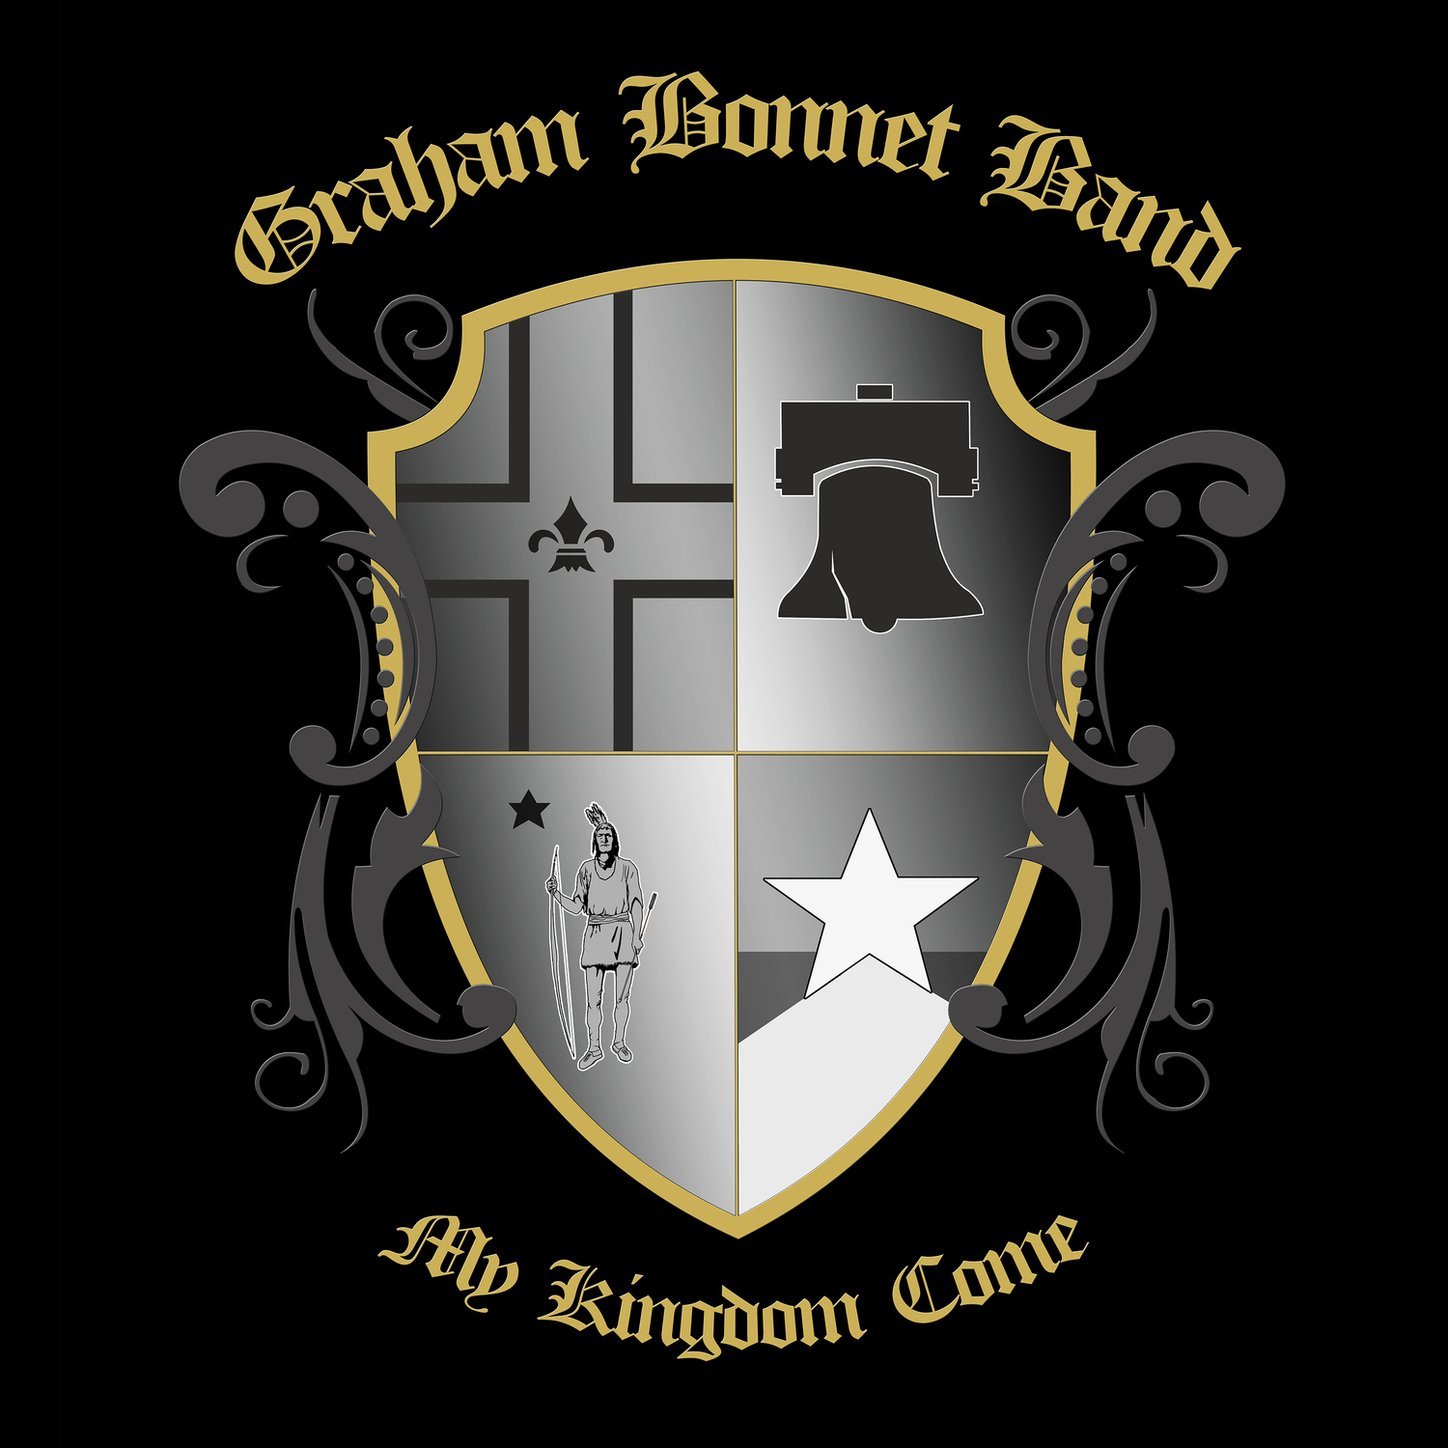 GRAHAM BONNET BAND - My Kingdom Come - front